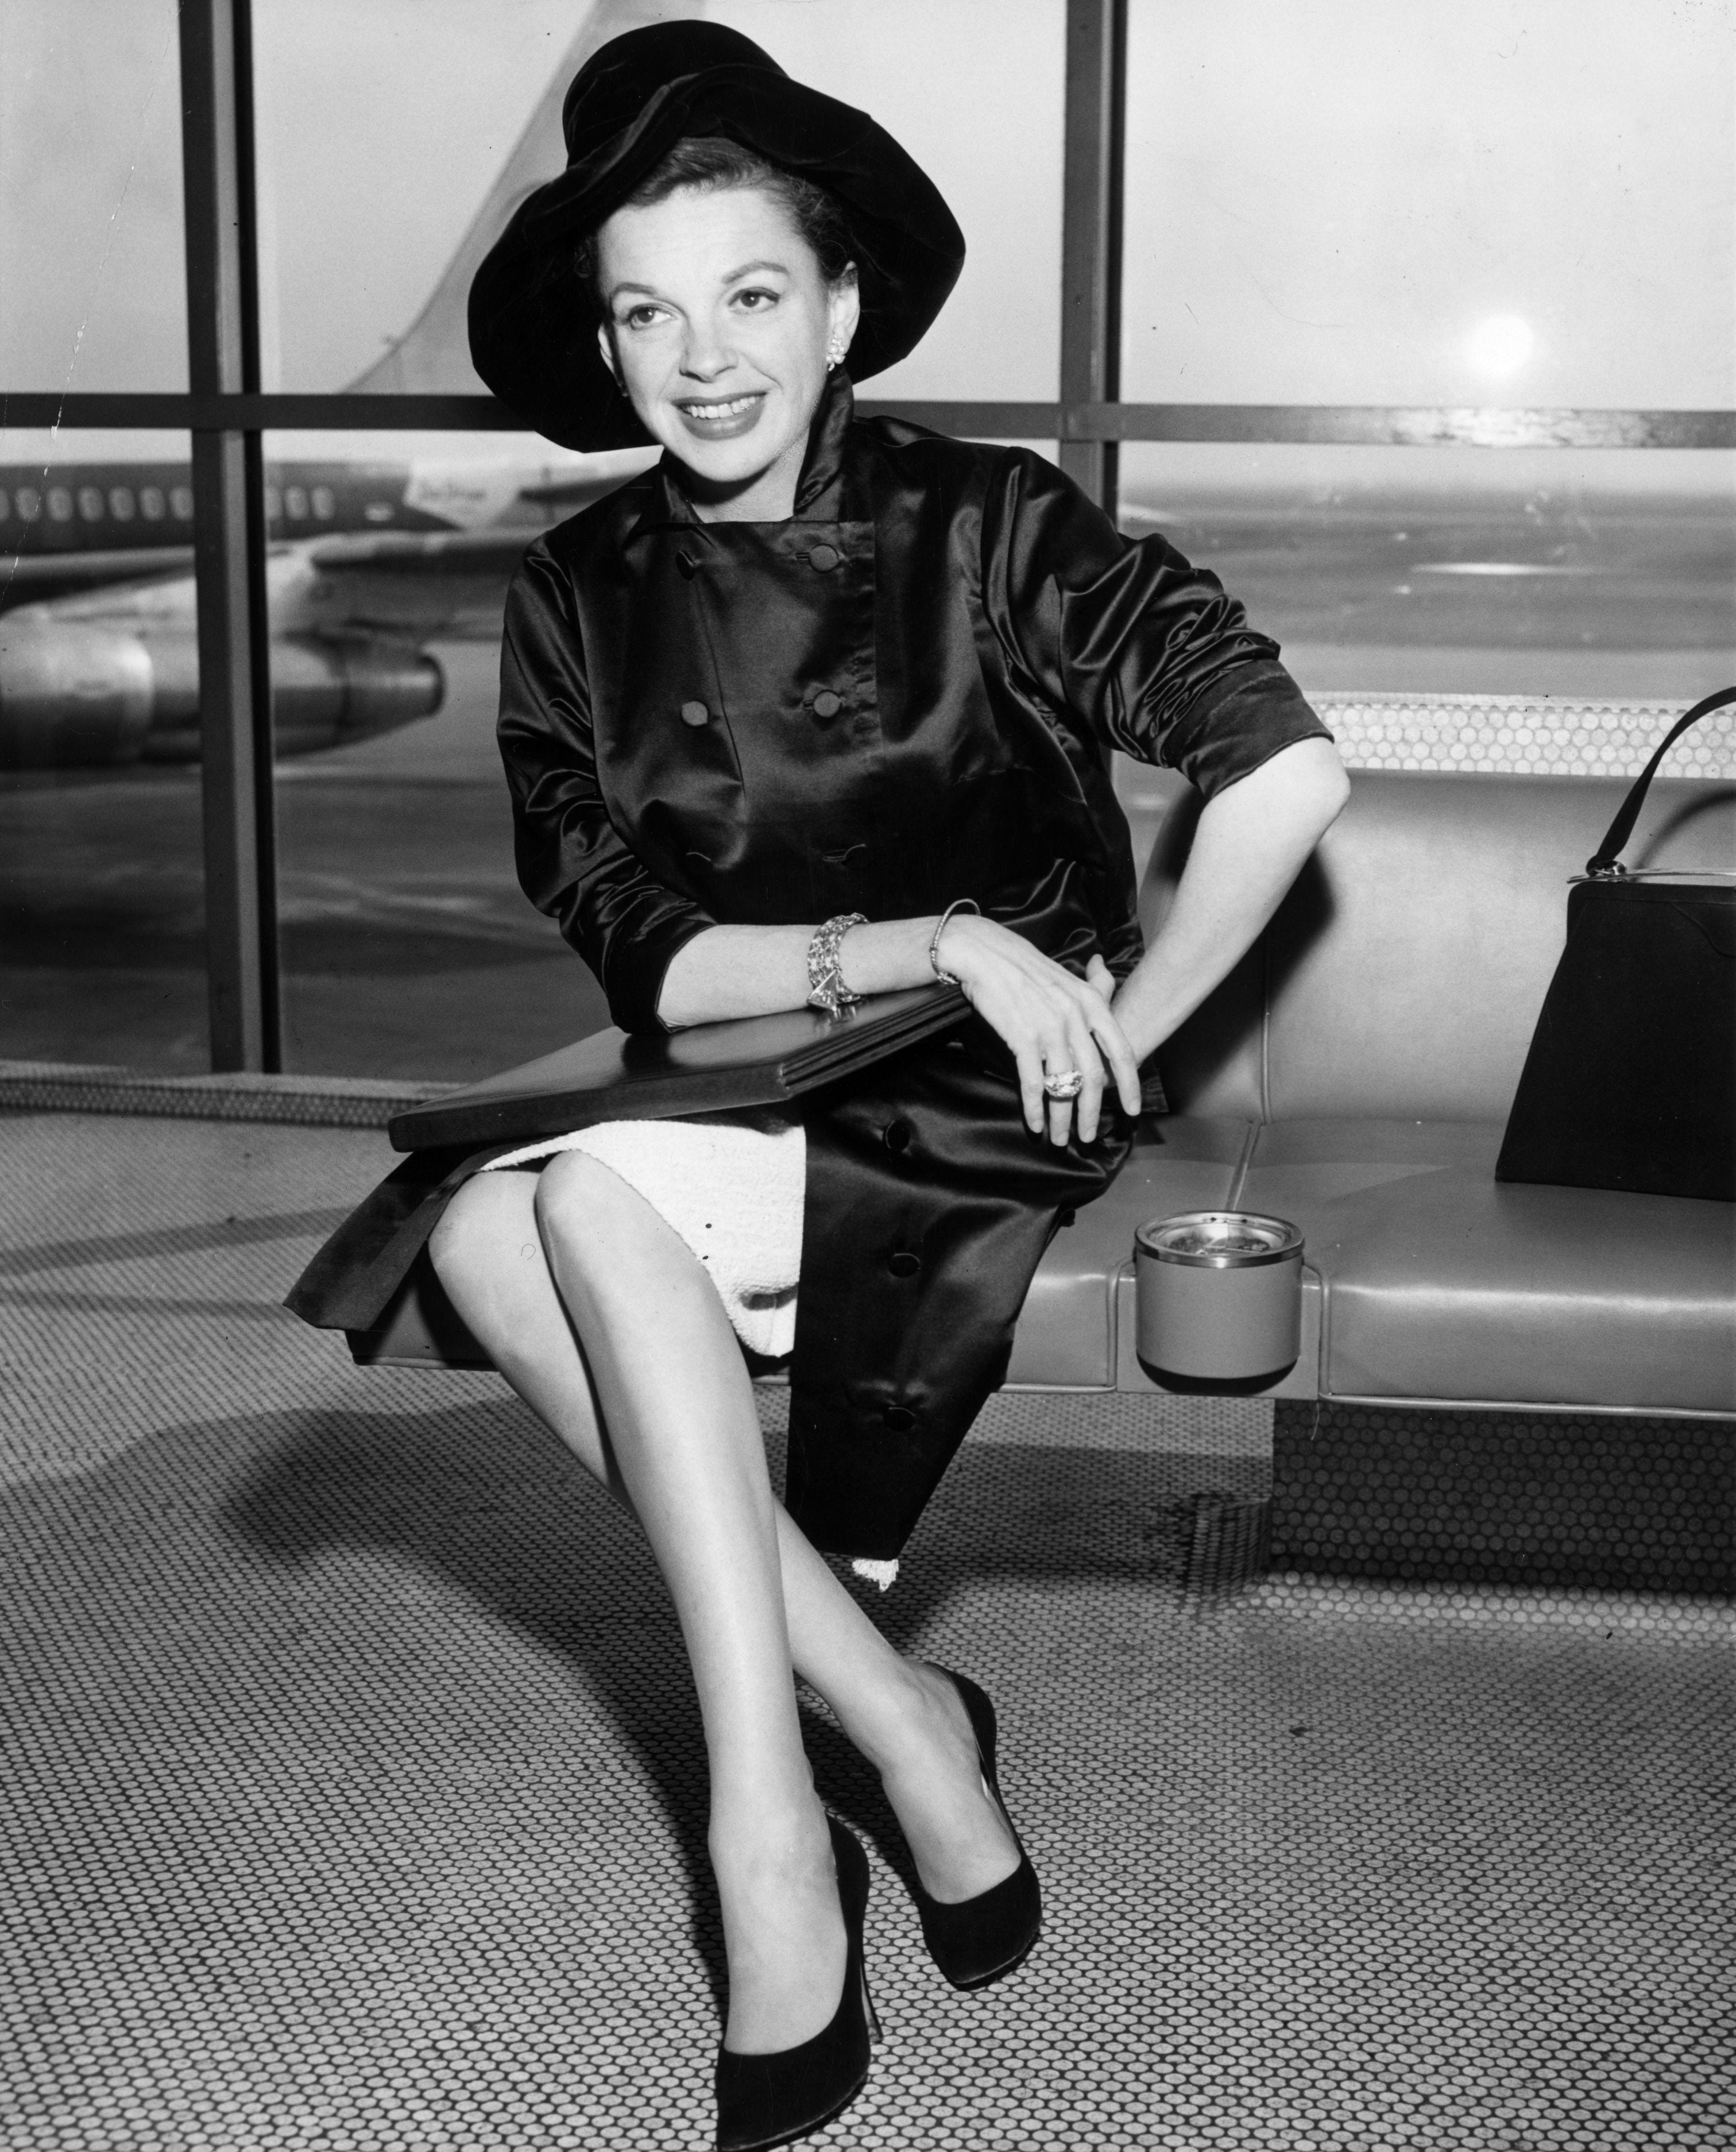 Sängerin und Filmstar Judy Garland auf einem Flughafen um 1955.